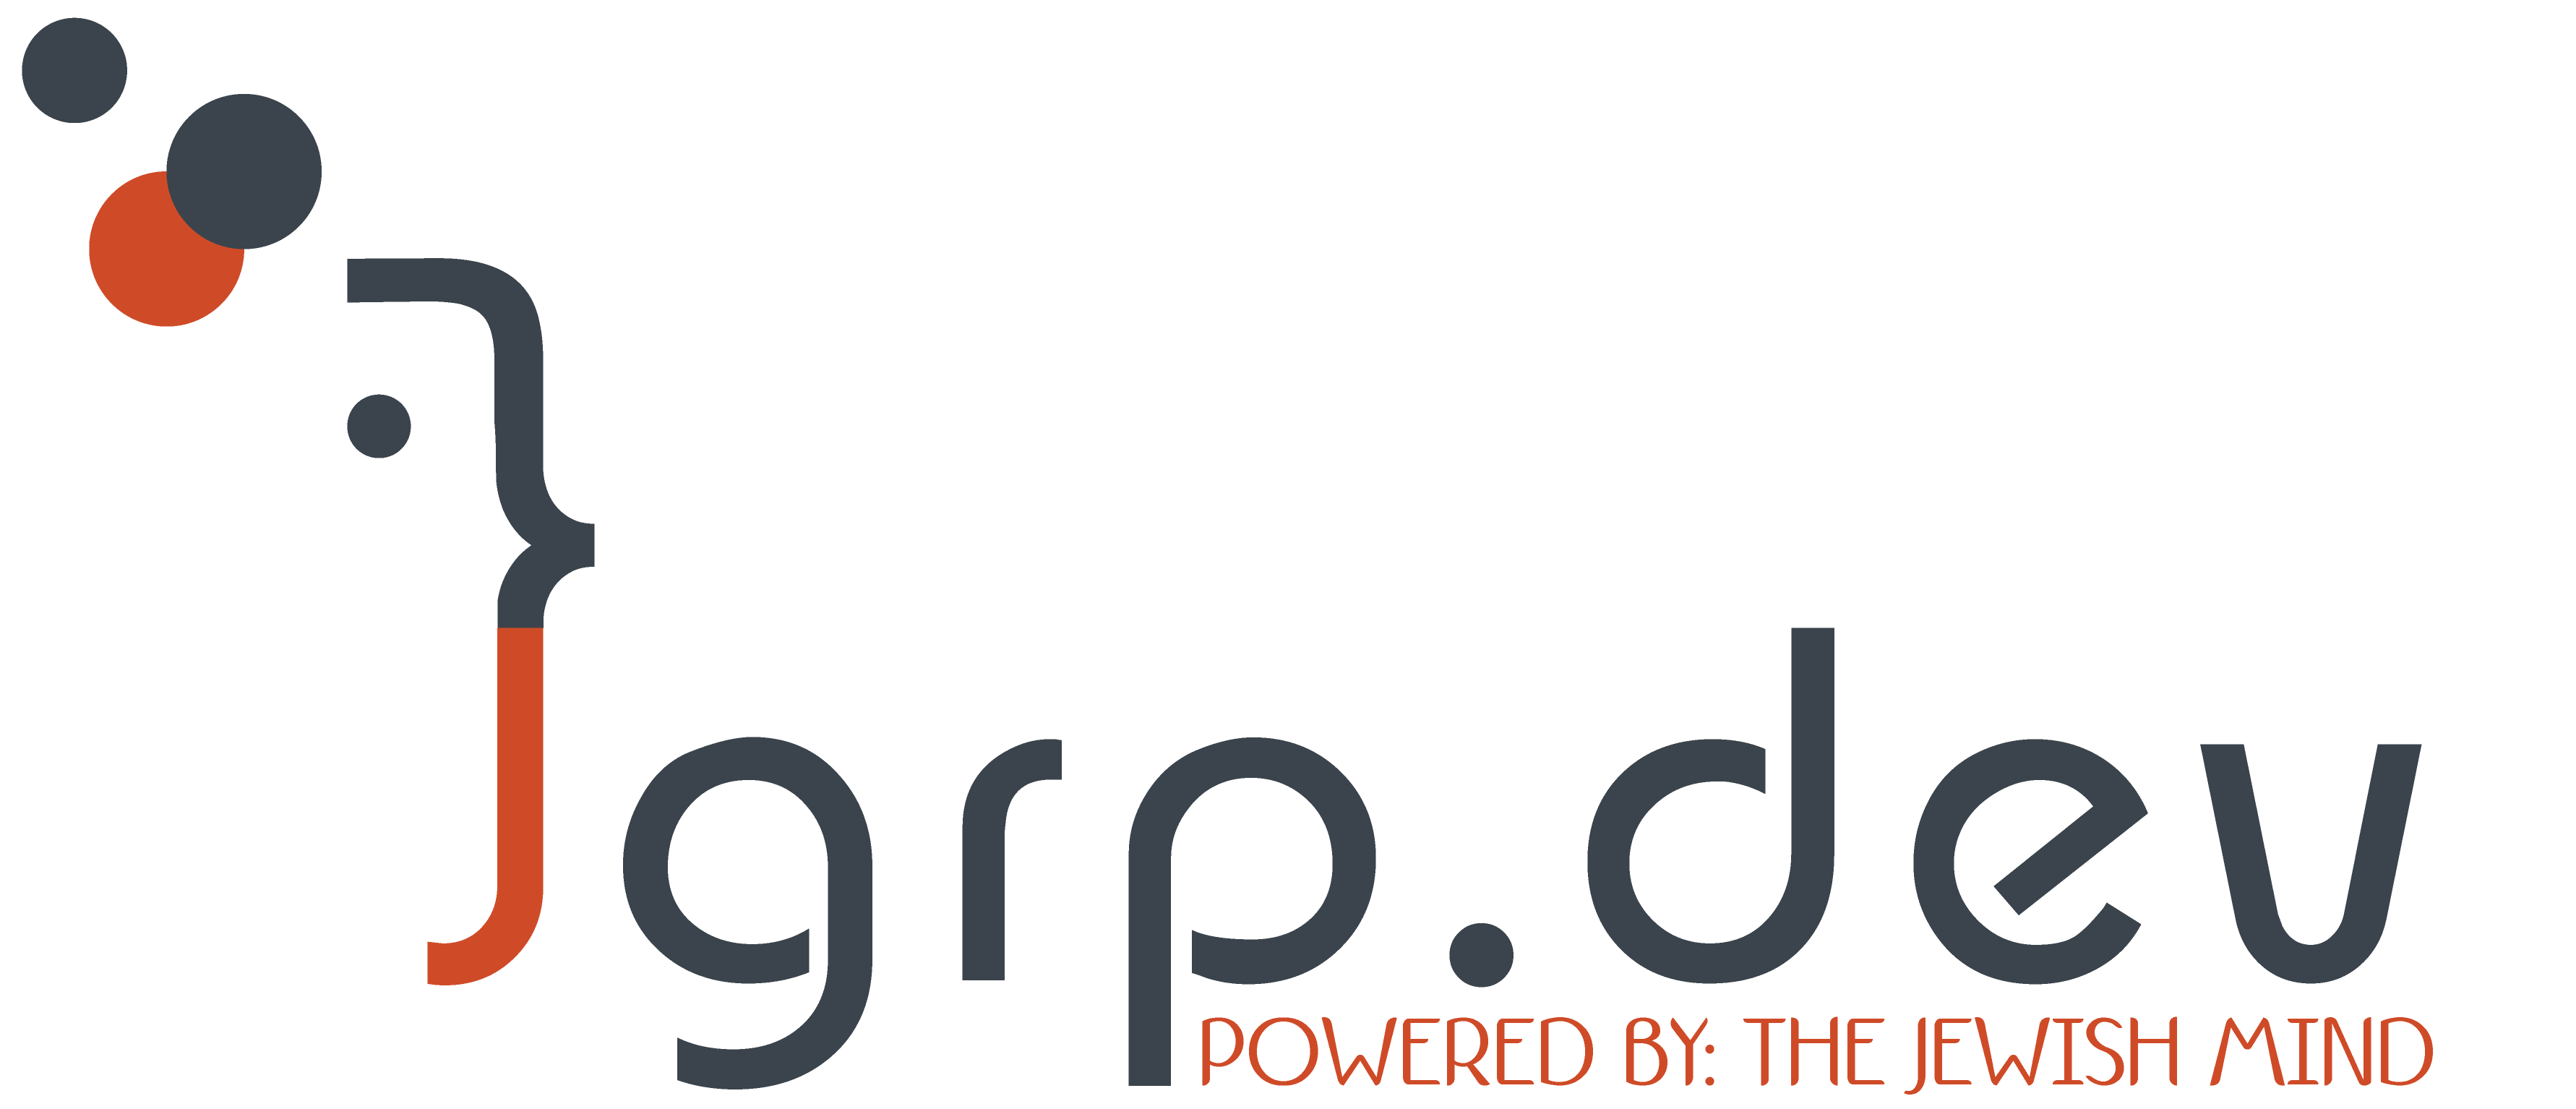 jgrp logo